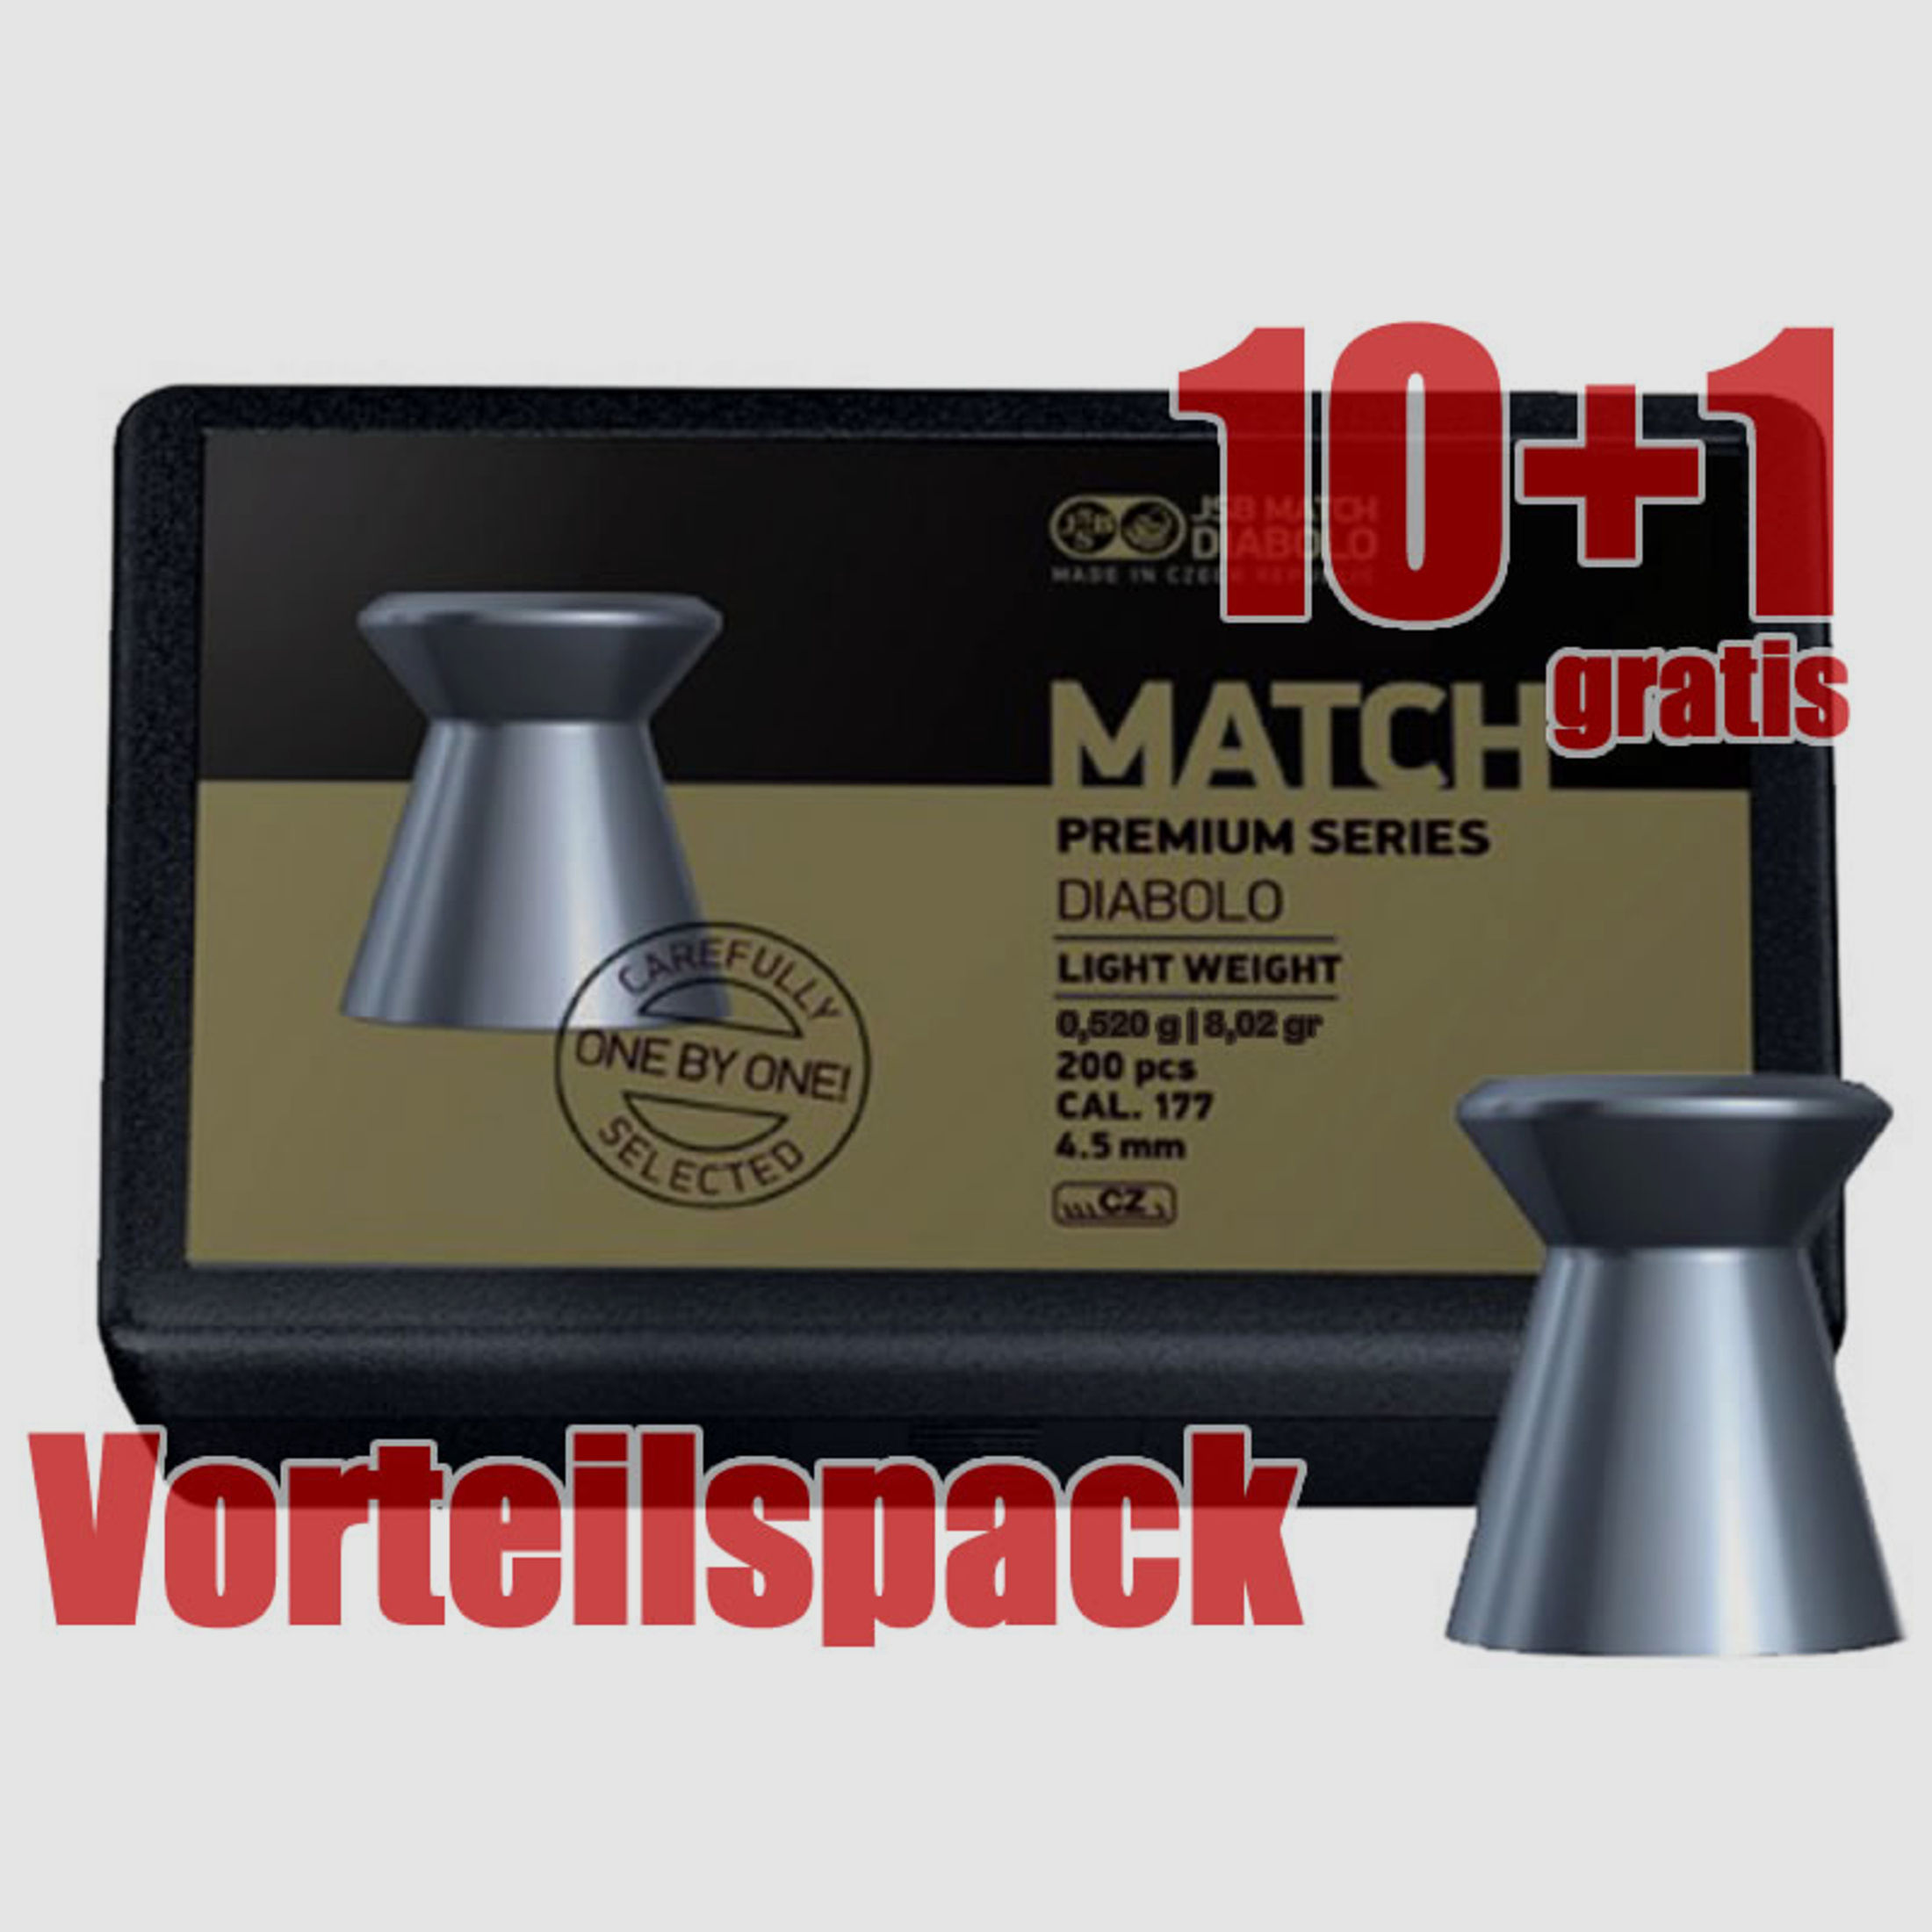 10+1 GRATIS x 200 StĂĽck Flachkopf Diabolo JSB MATCH PREMIUM, Kal. 4,52 mm, 0,520 g